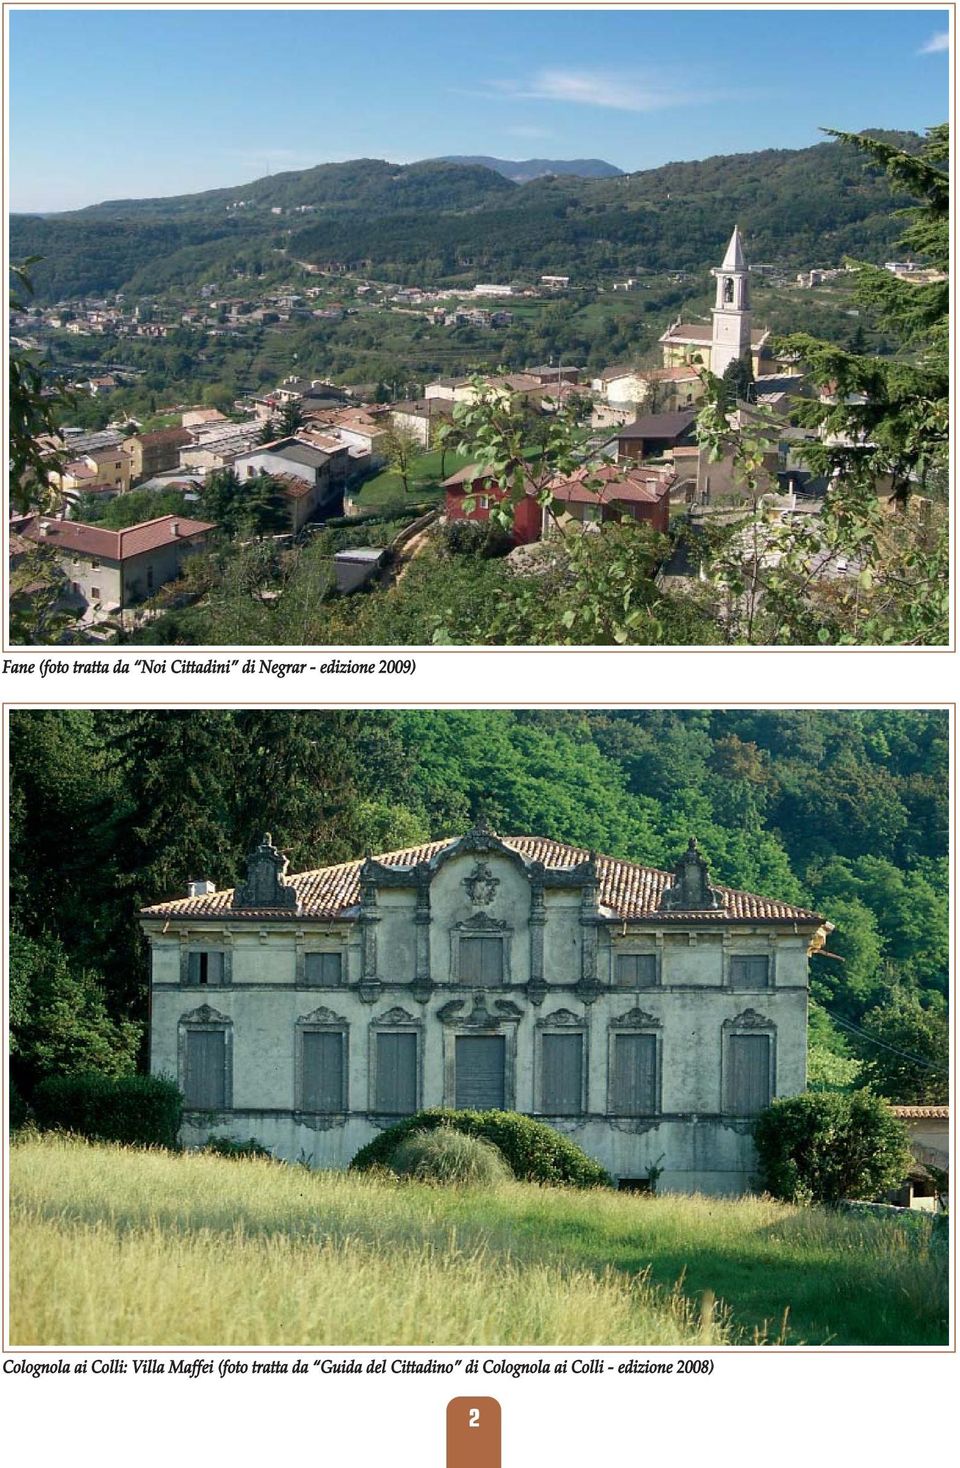 Colli: Villa Maffei (foto tratta da Guida